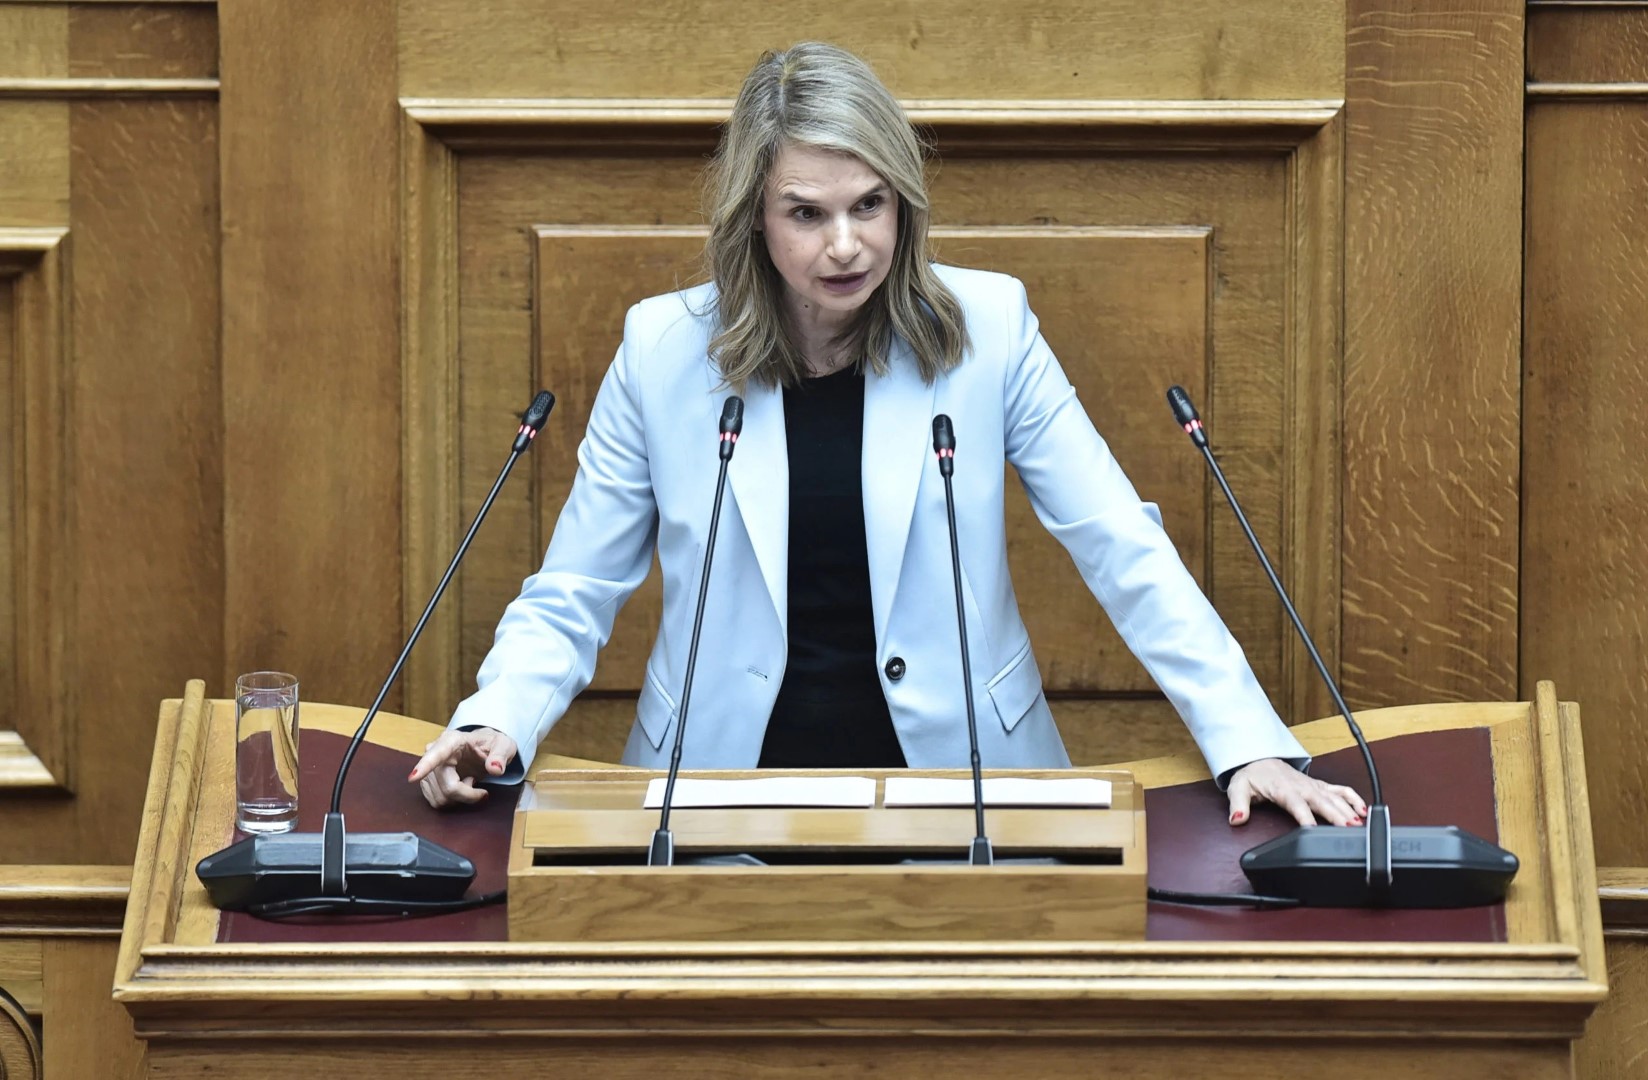 Μιλένα Αποστολάκη: Νιώθω έτοιμη για πρωθυπουργός